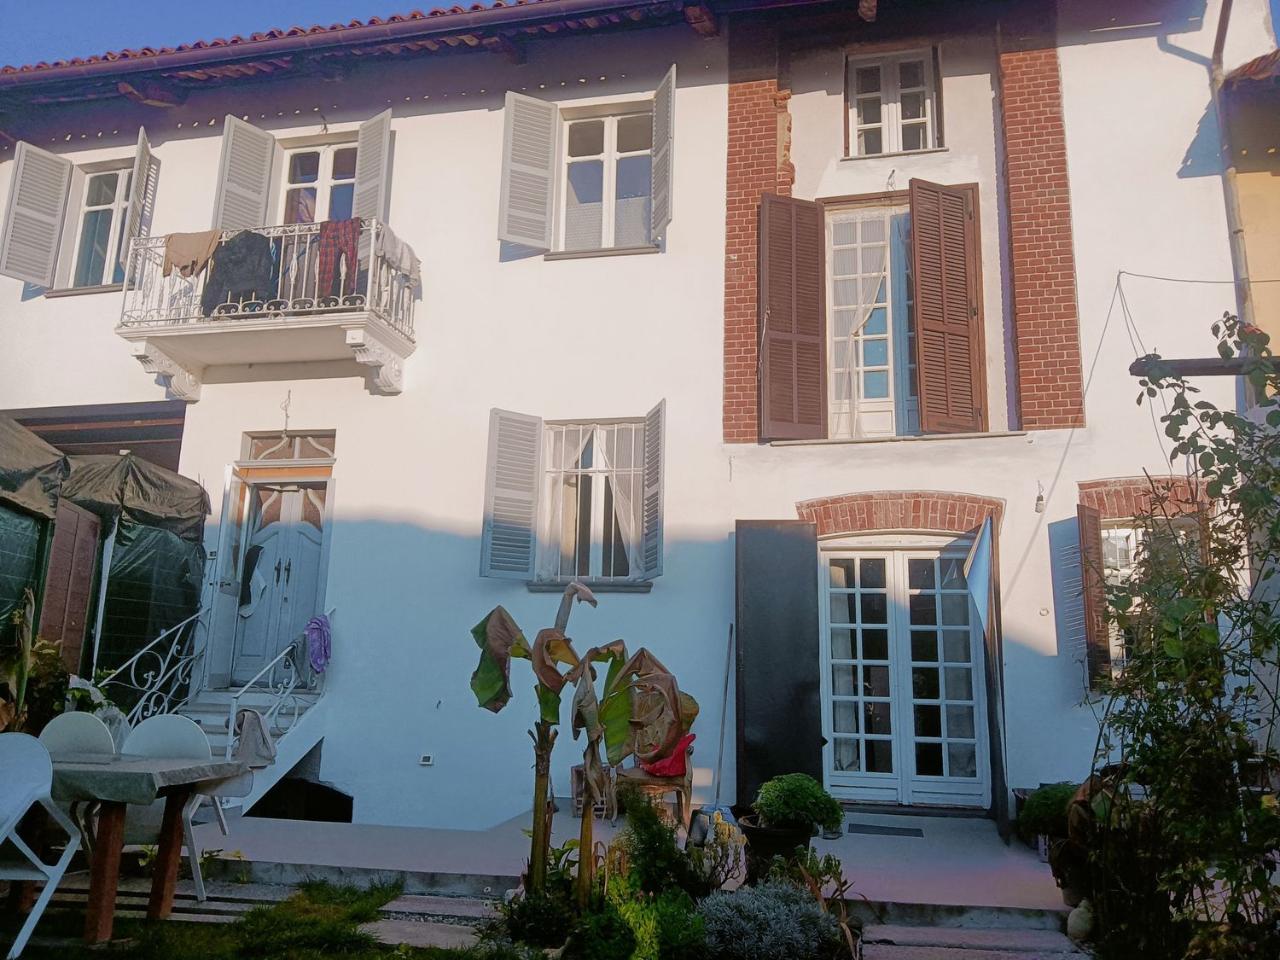 Villa in vendita a Moriondo Torinese